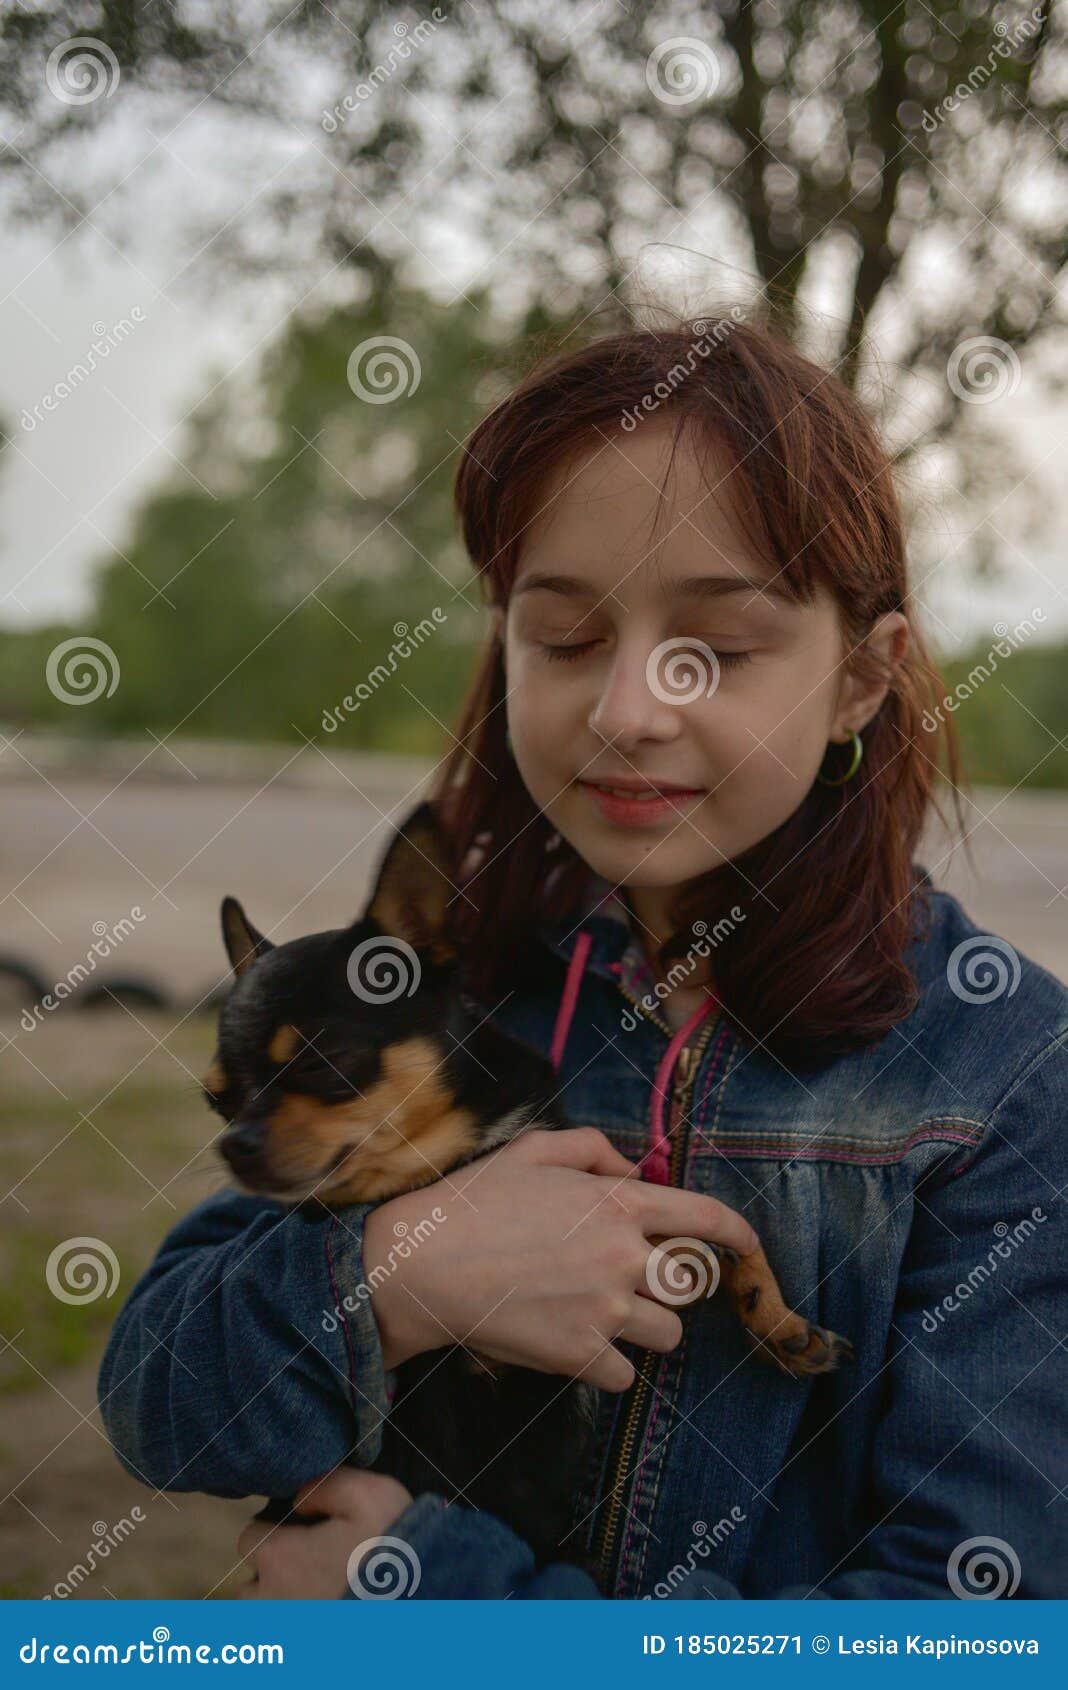 女孩和小狗 库存照片. 图片 包括有 少许, 富感情的, 童年, 喜悦, 藏品, 白种人, 查出, 似犬 - 48105506